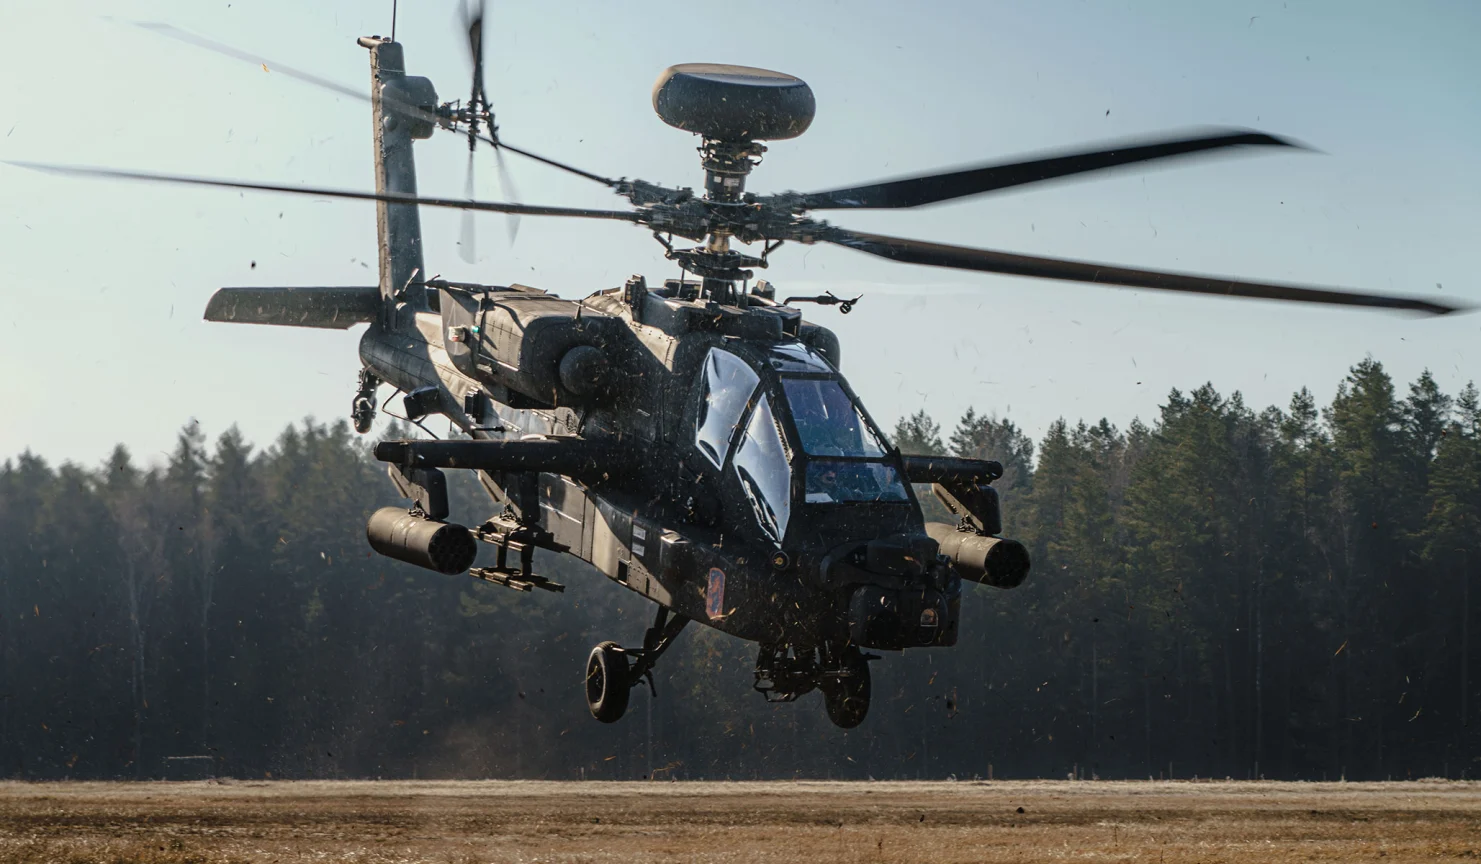 Ah-64e. Ah-64 Apache габариты. Gyro System Ah 64 Helicopter. Ah-64d.